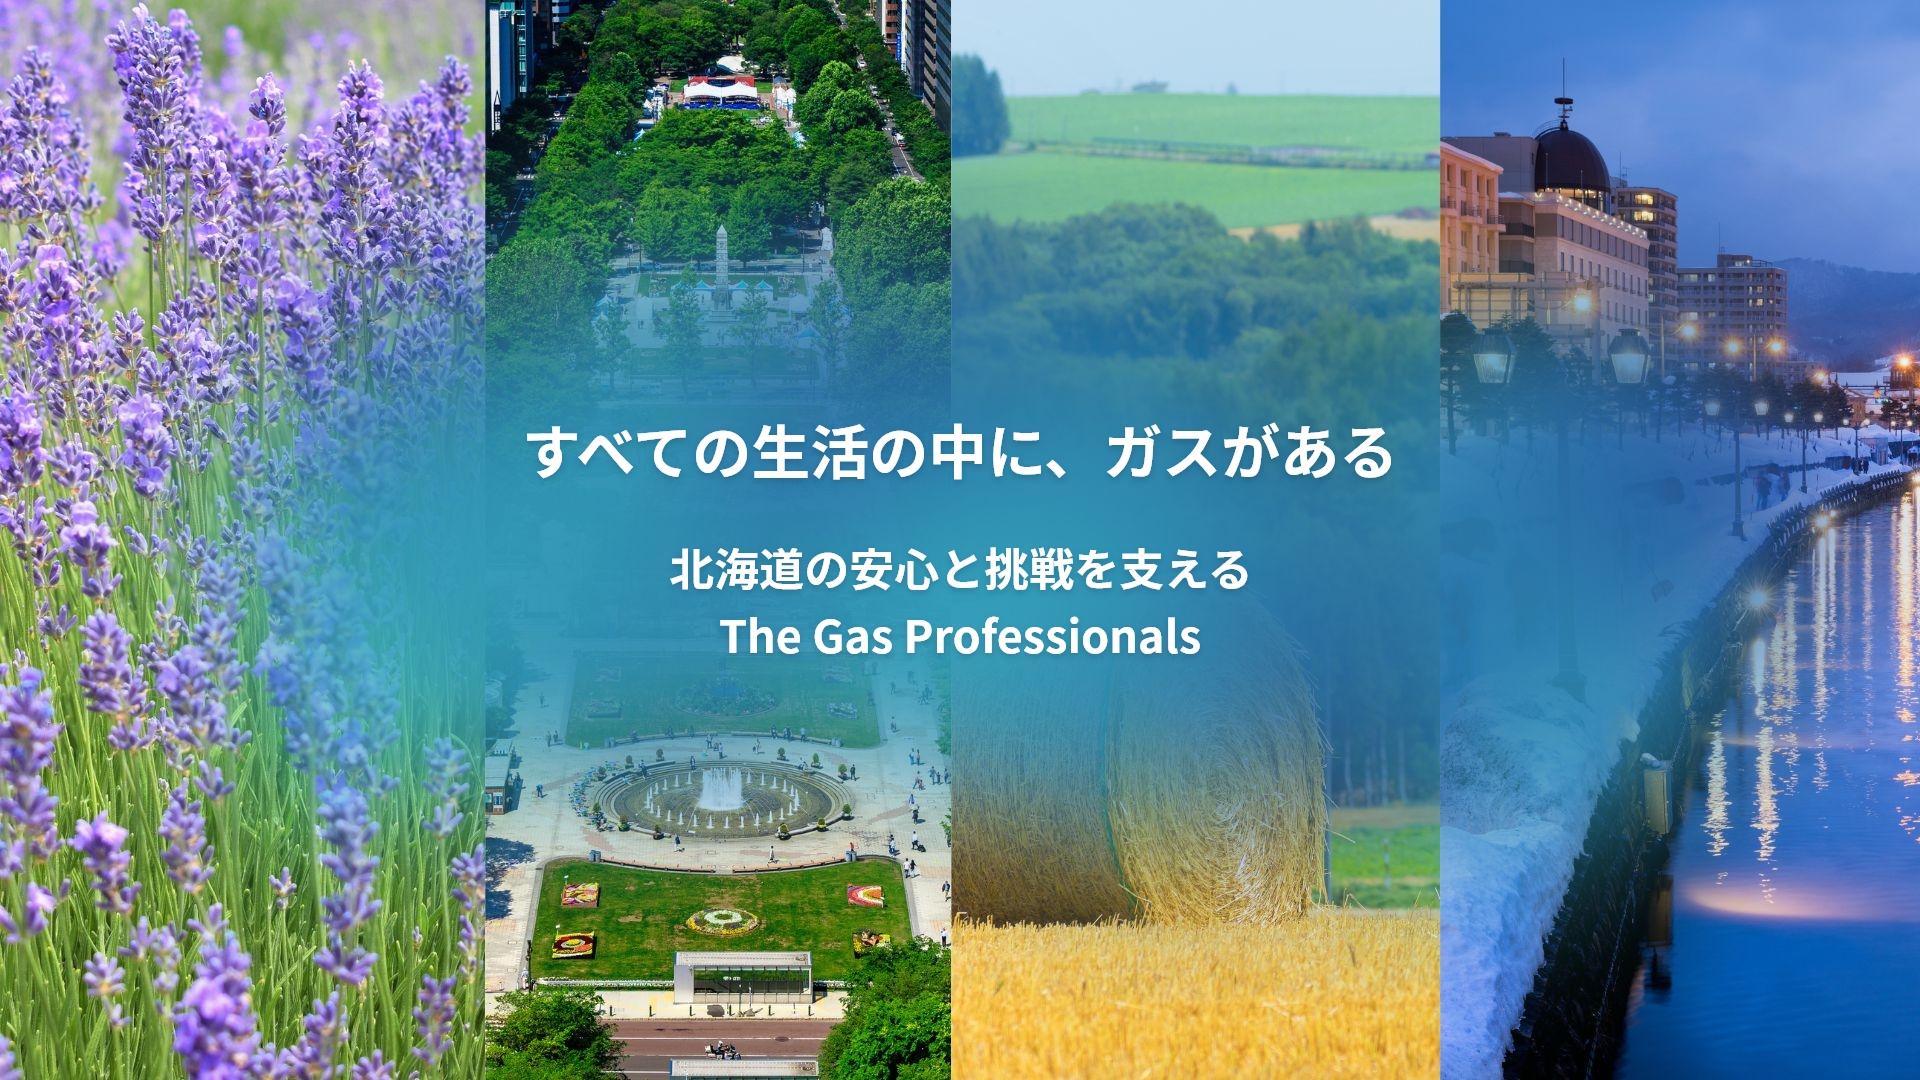 すべての生活の中に、ガスがある　北海道の安心と挑戦を支える